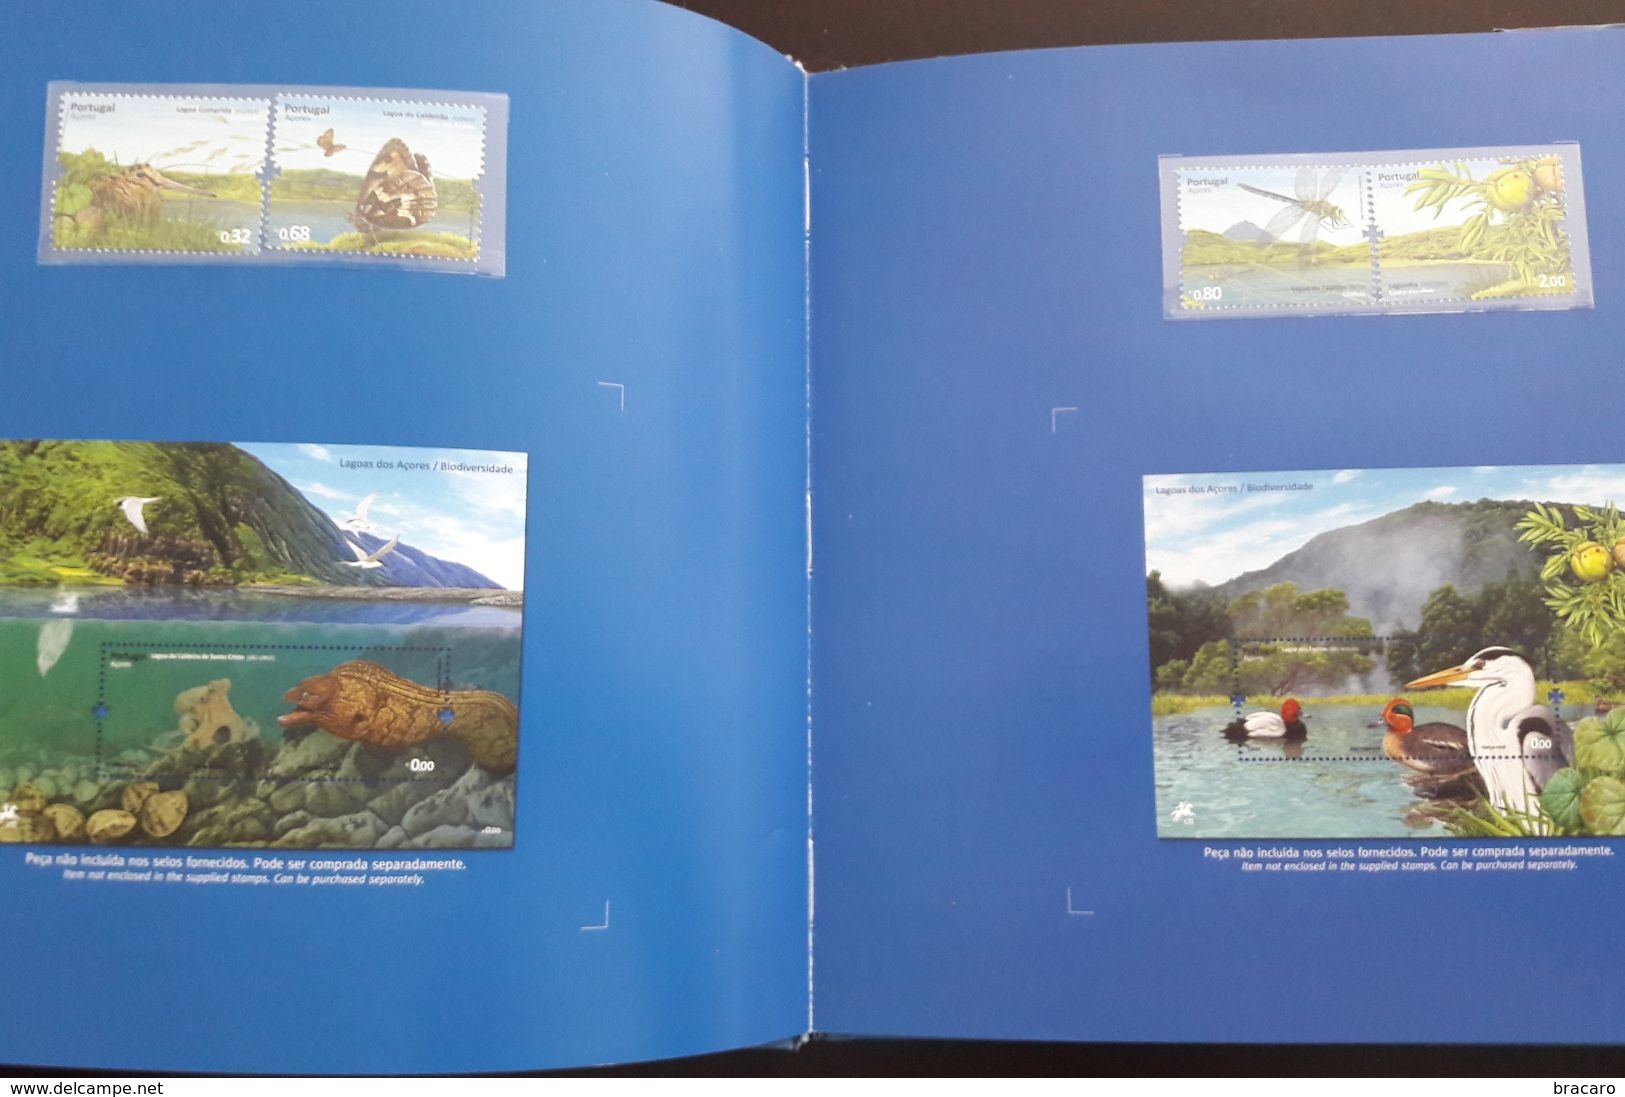 PORTUGAL - O MEU ALBUM DE SELOS / MY STAMP ALBUM - Book - Includes 47 Stamps 2009 MNH - Libretti